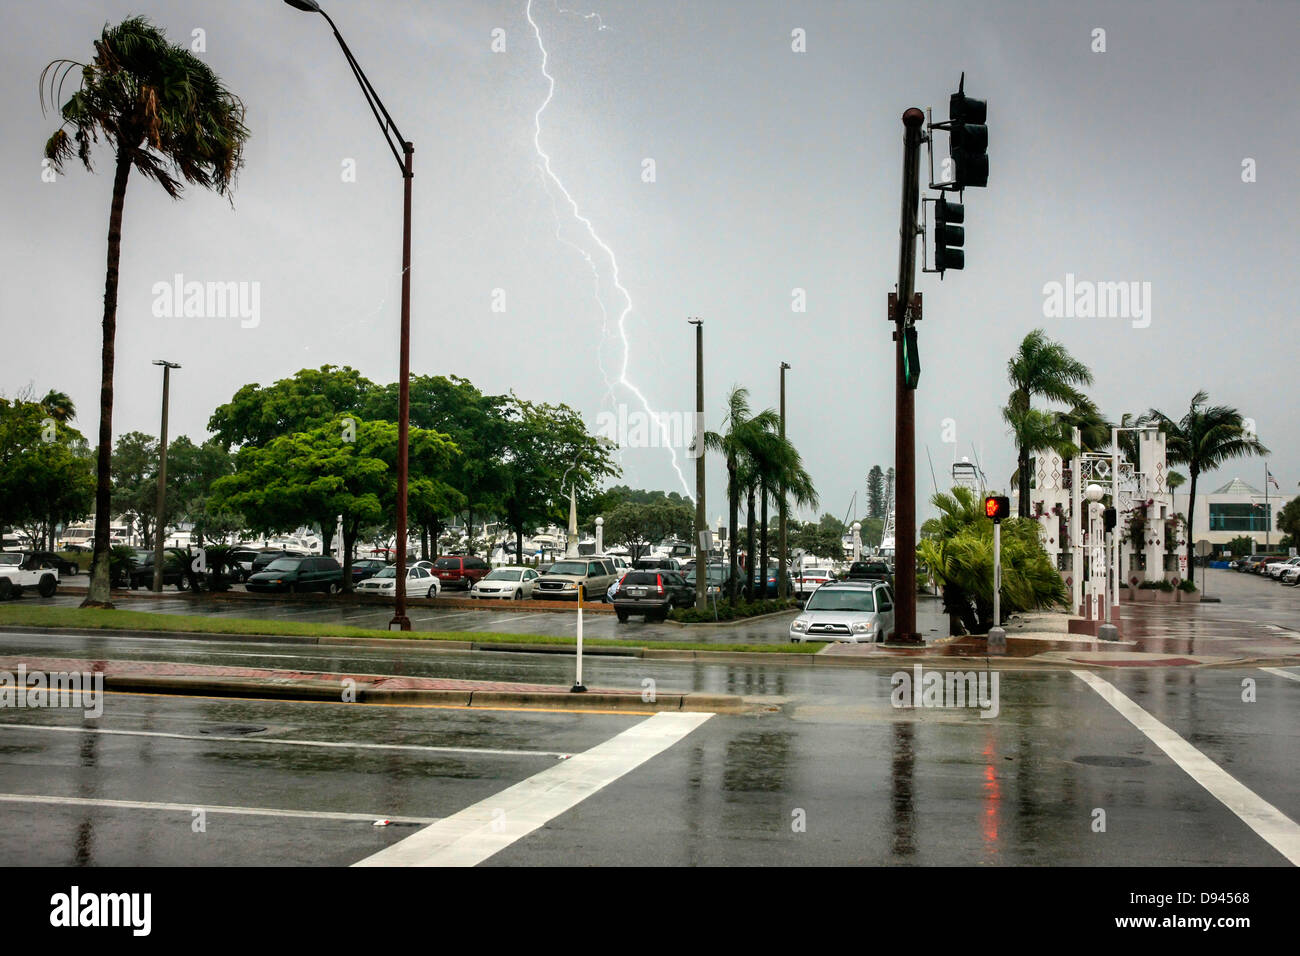 Les rues désertes de Sarasota au cours d'une première tempête tropicale. Banque D'Images